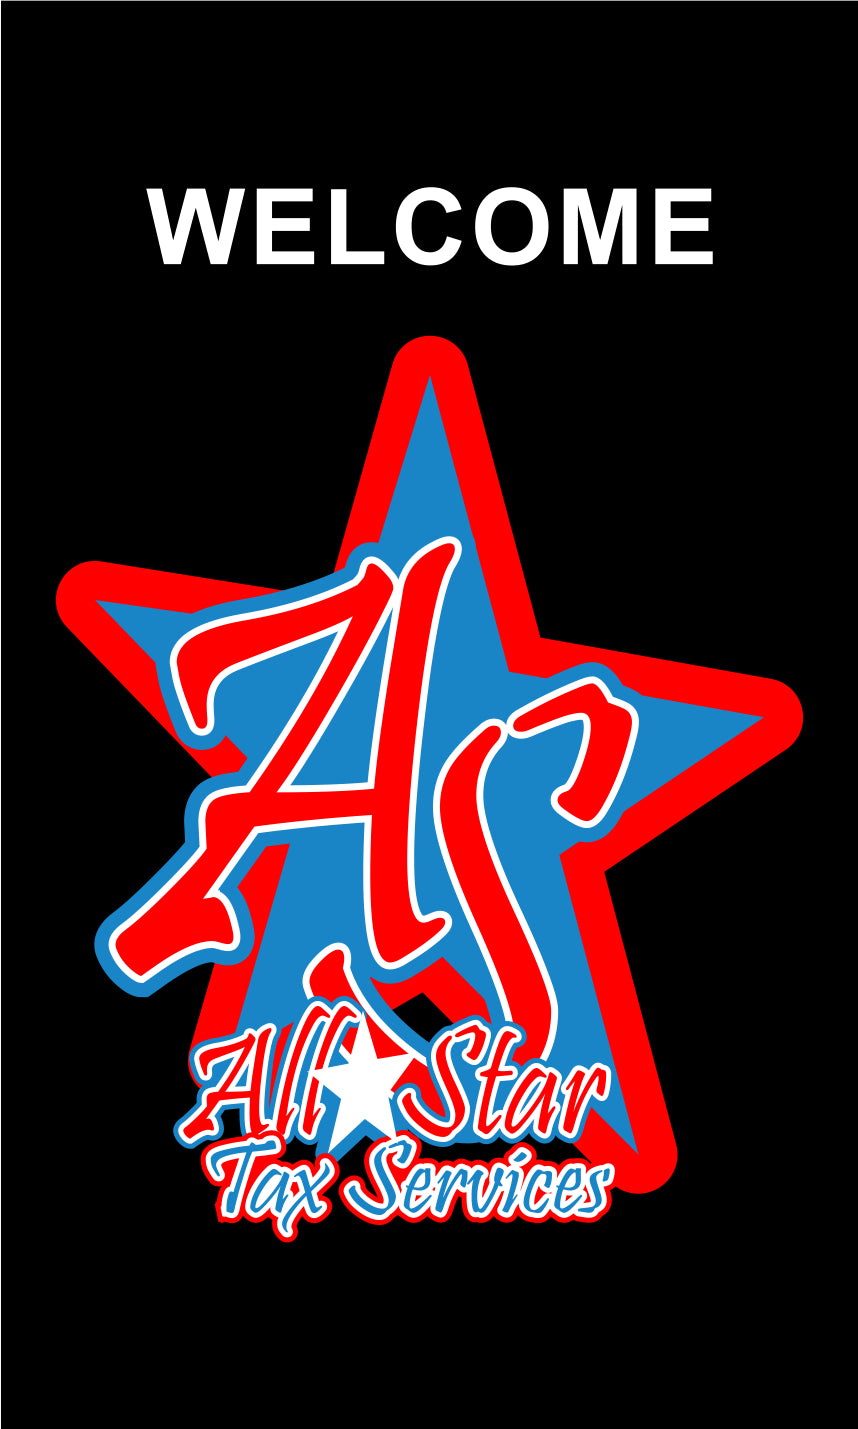 Allstar multi service §